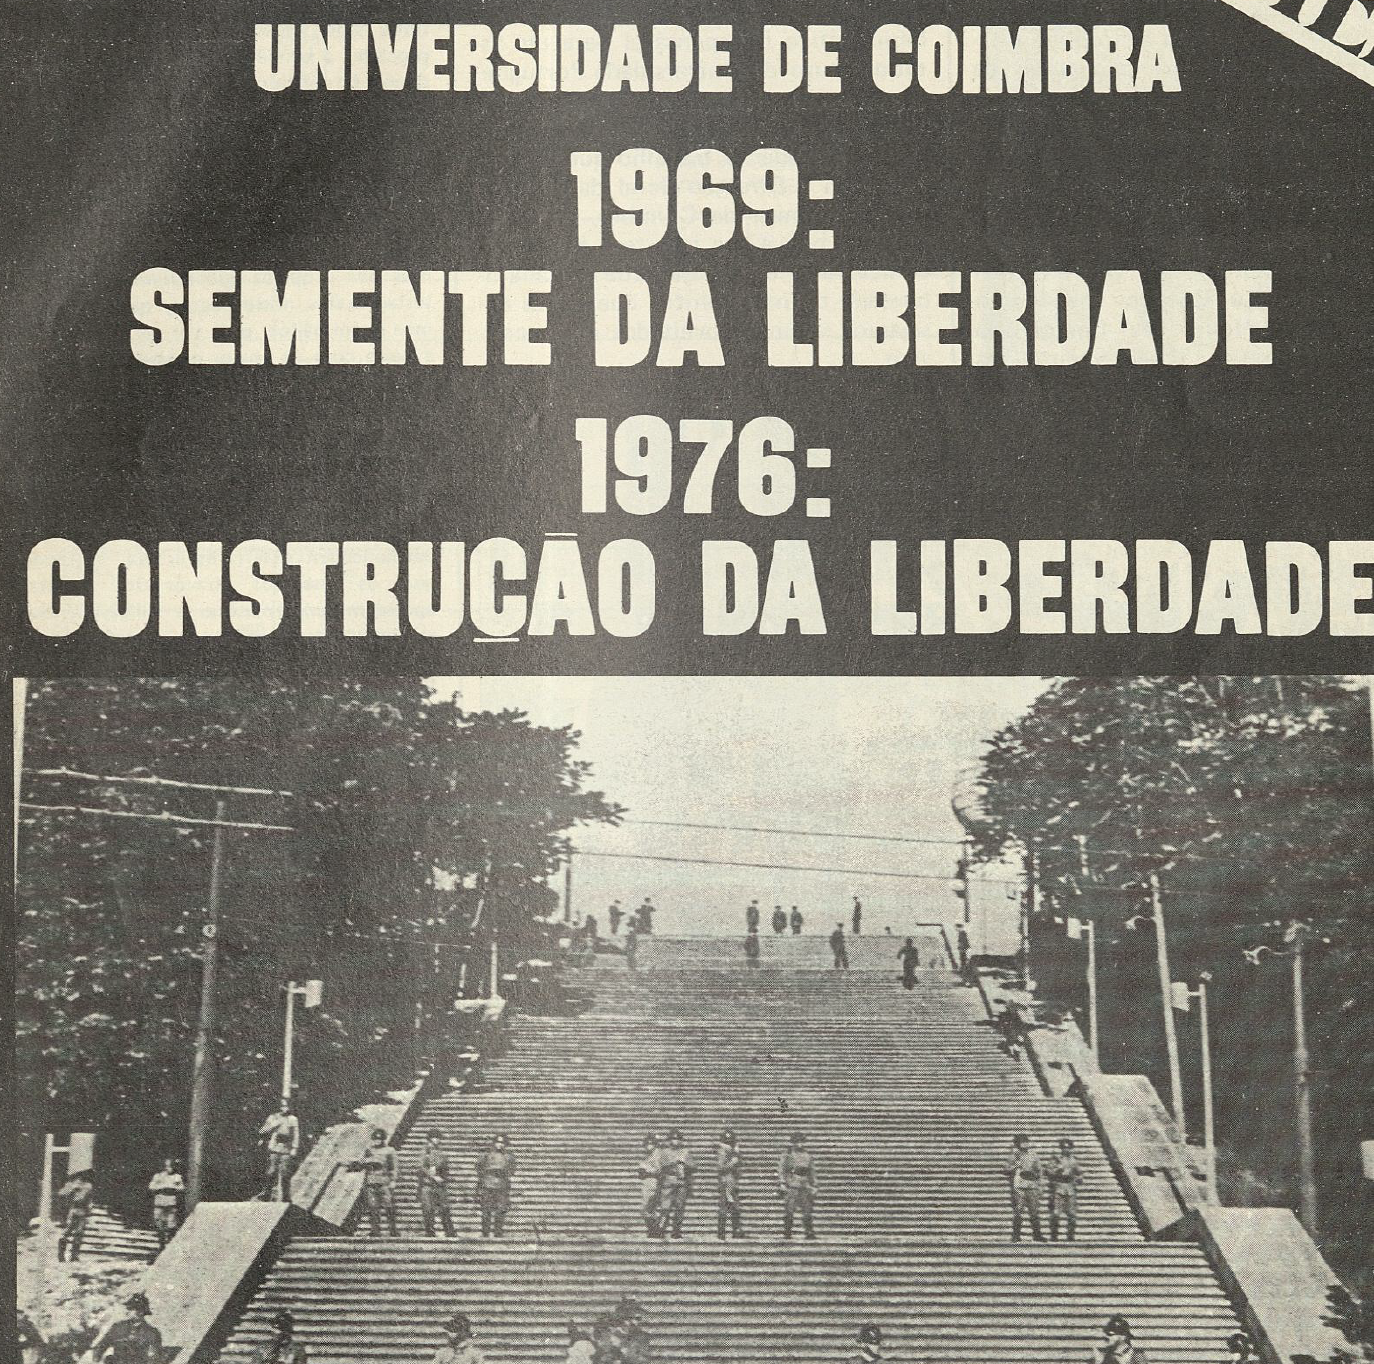 "Universidade de Coimbra 1969: Semente da Liberdade 1976: Construção da Liberadade"